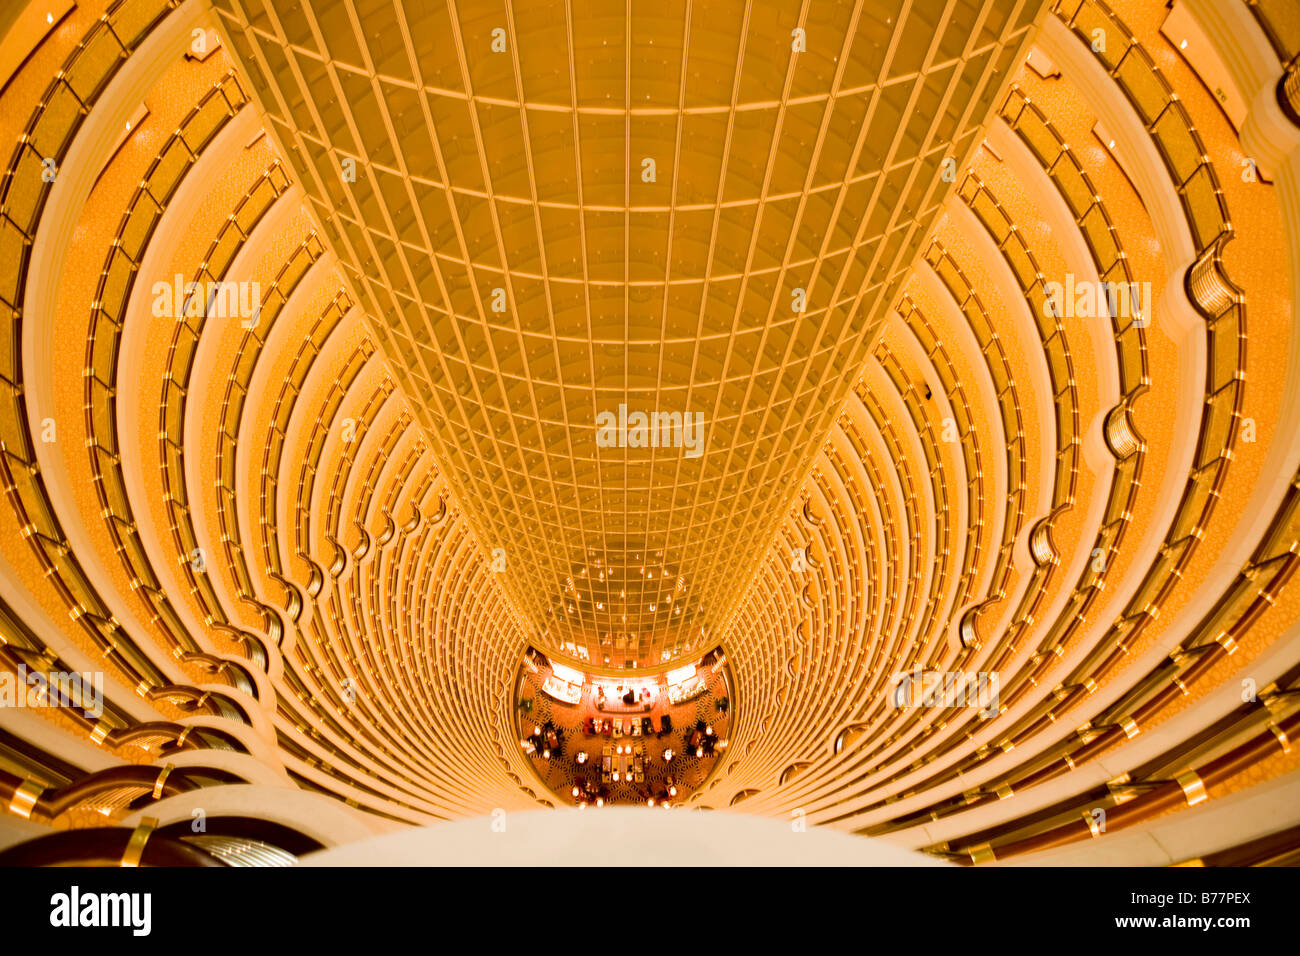 Lobby Grand Hyatt Jin Mao Tower Shanghai China Asia Stock Photo Alamy